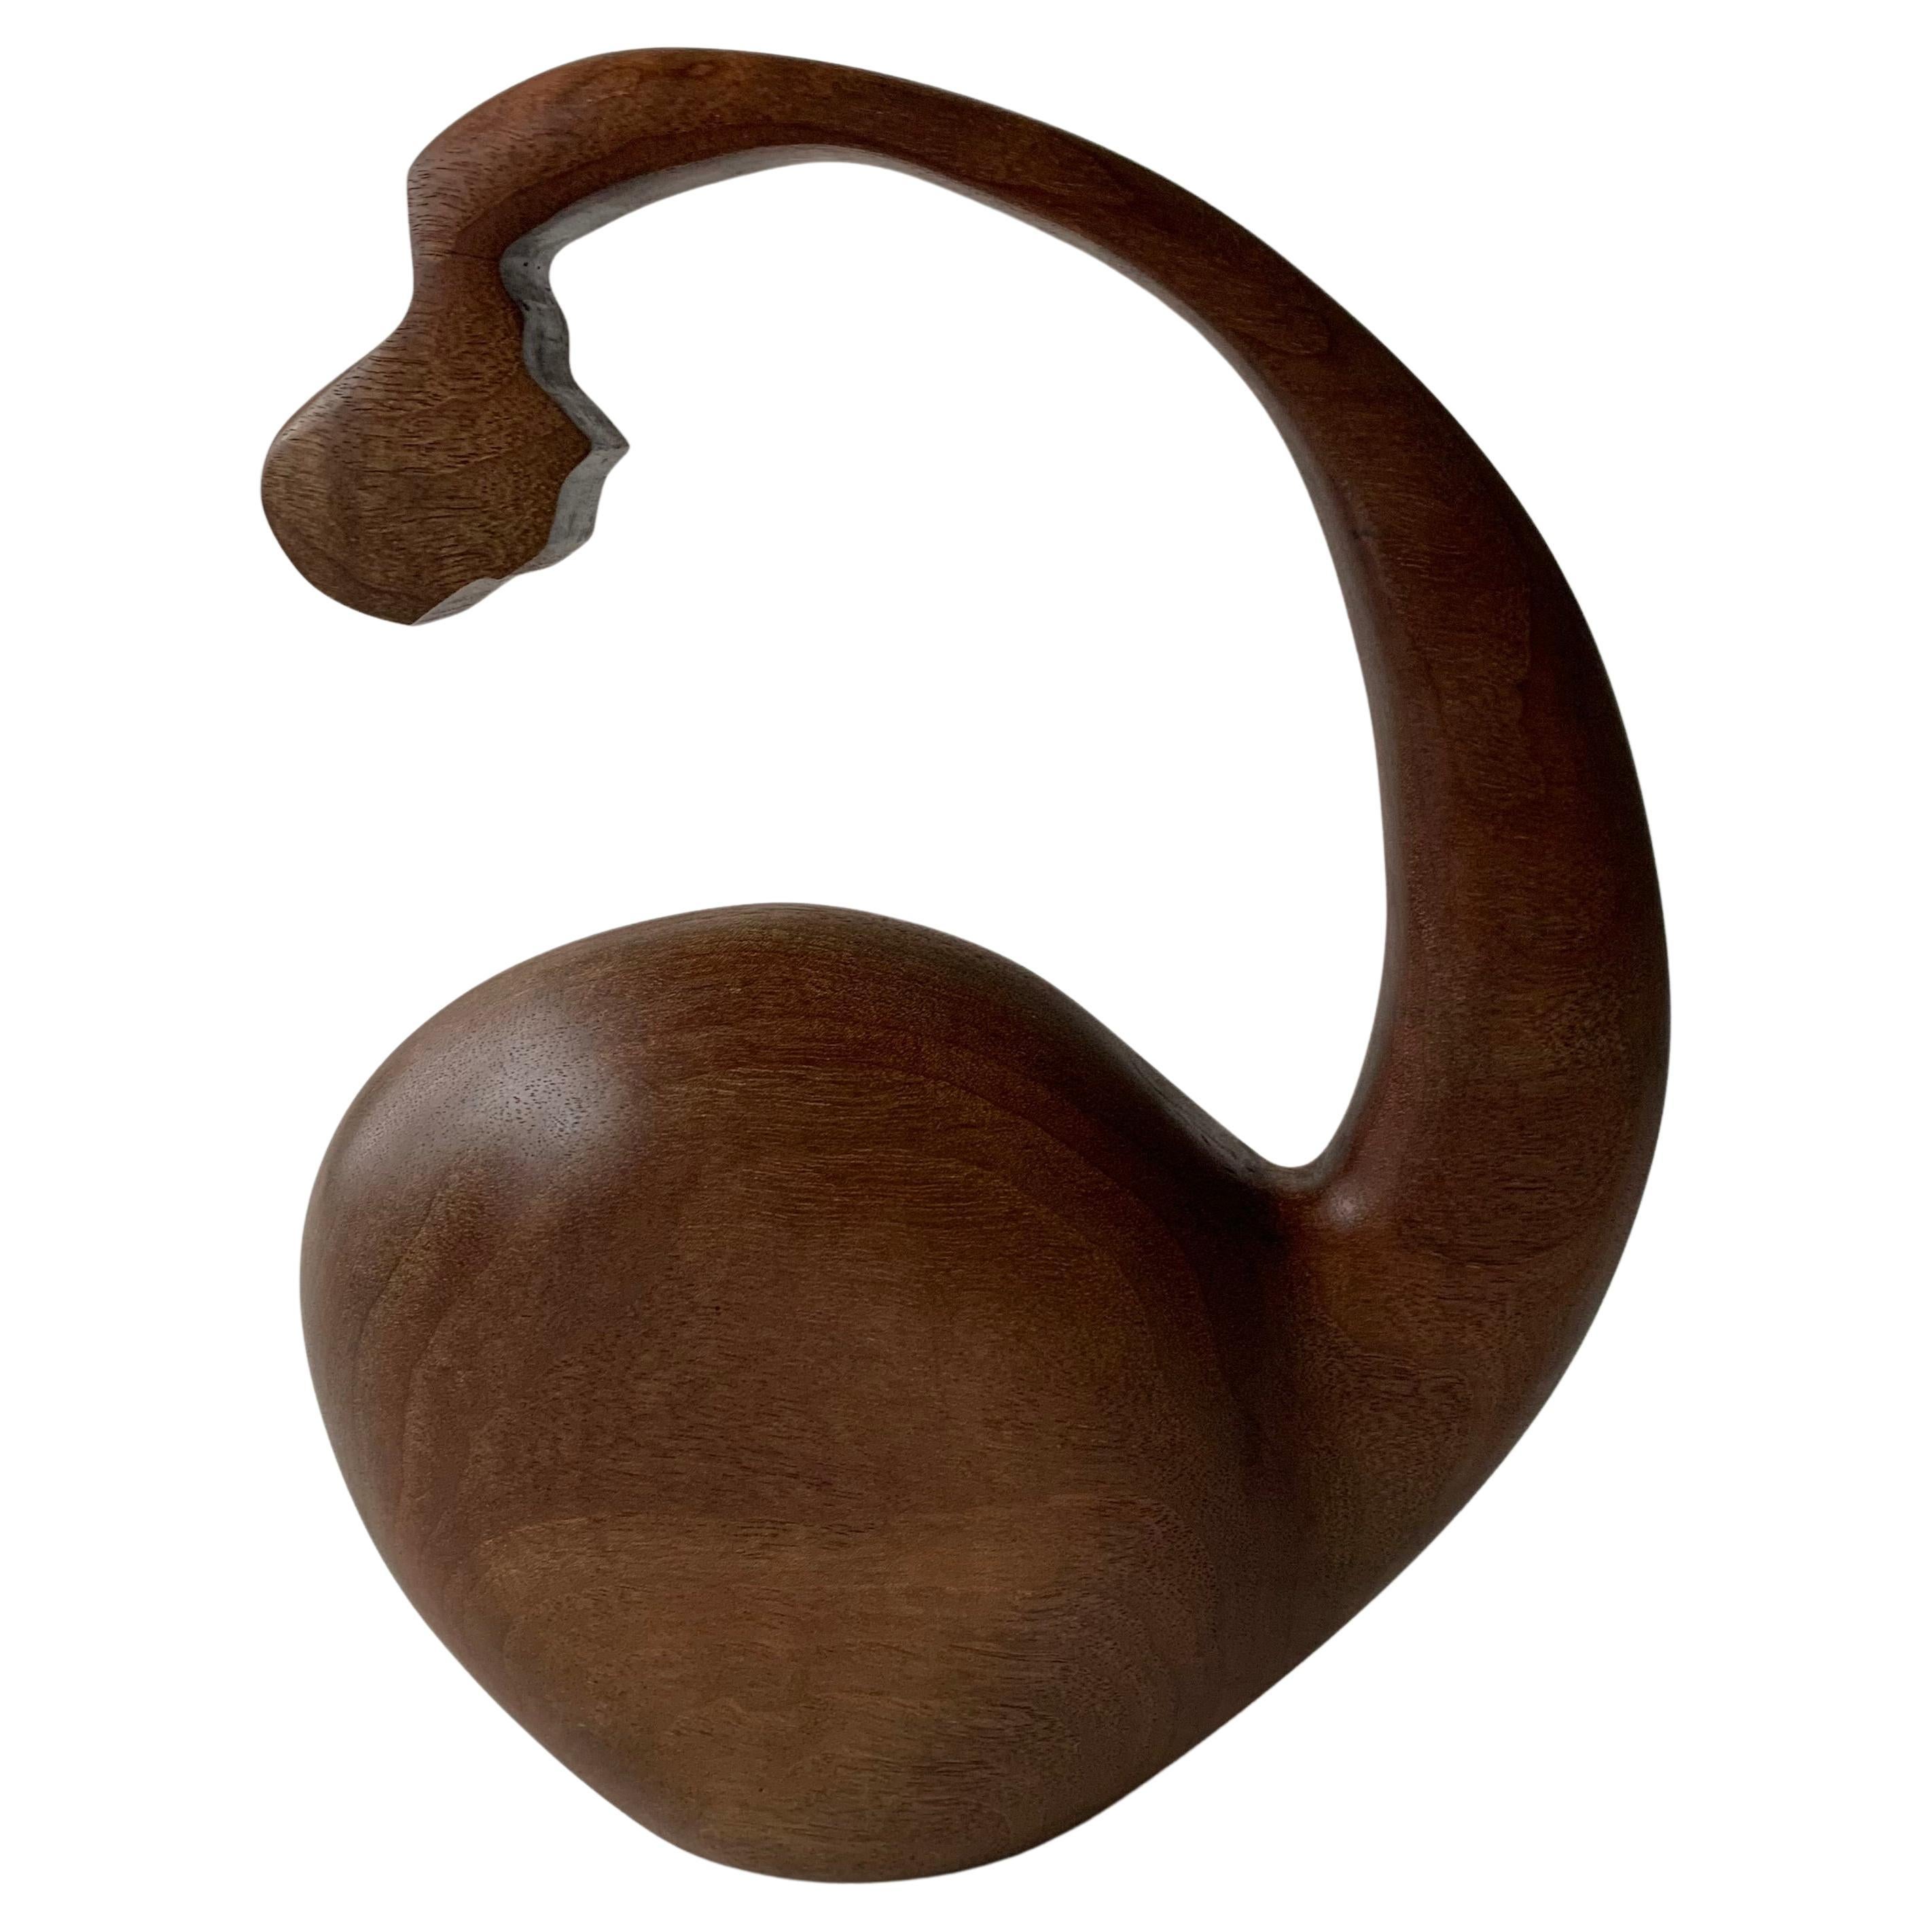 "Amused", Sculpture abstraite géométrique en bois de noyer, finition en bois naturel chaud.